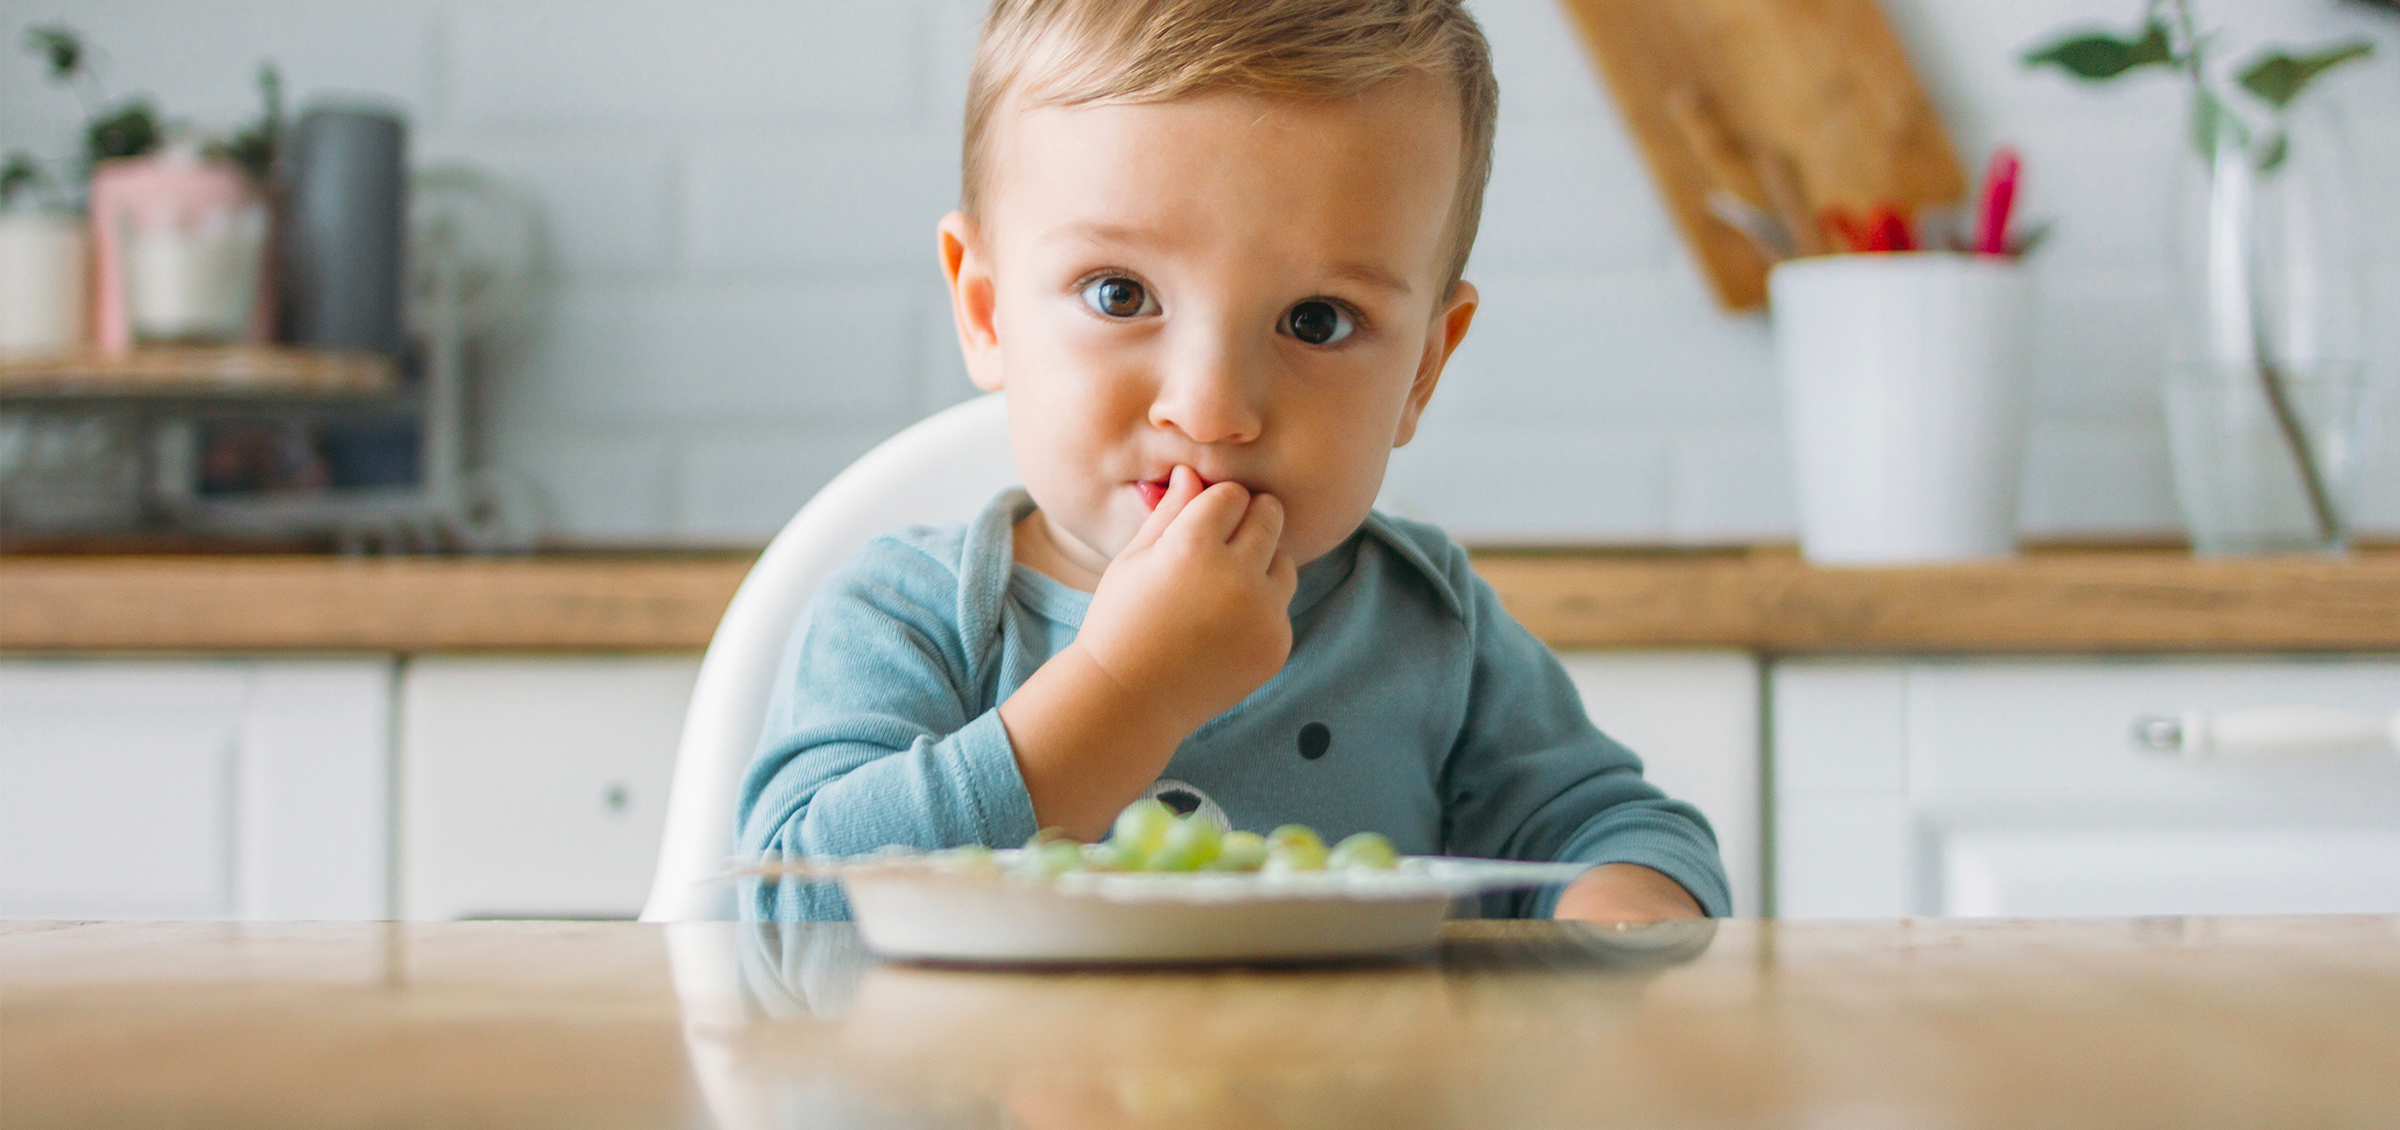 DME : la diversification menée par l'enfant - Cuisinez pour bébé